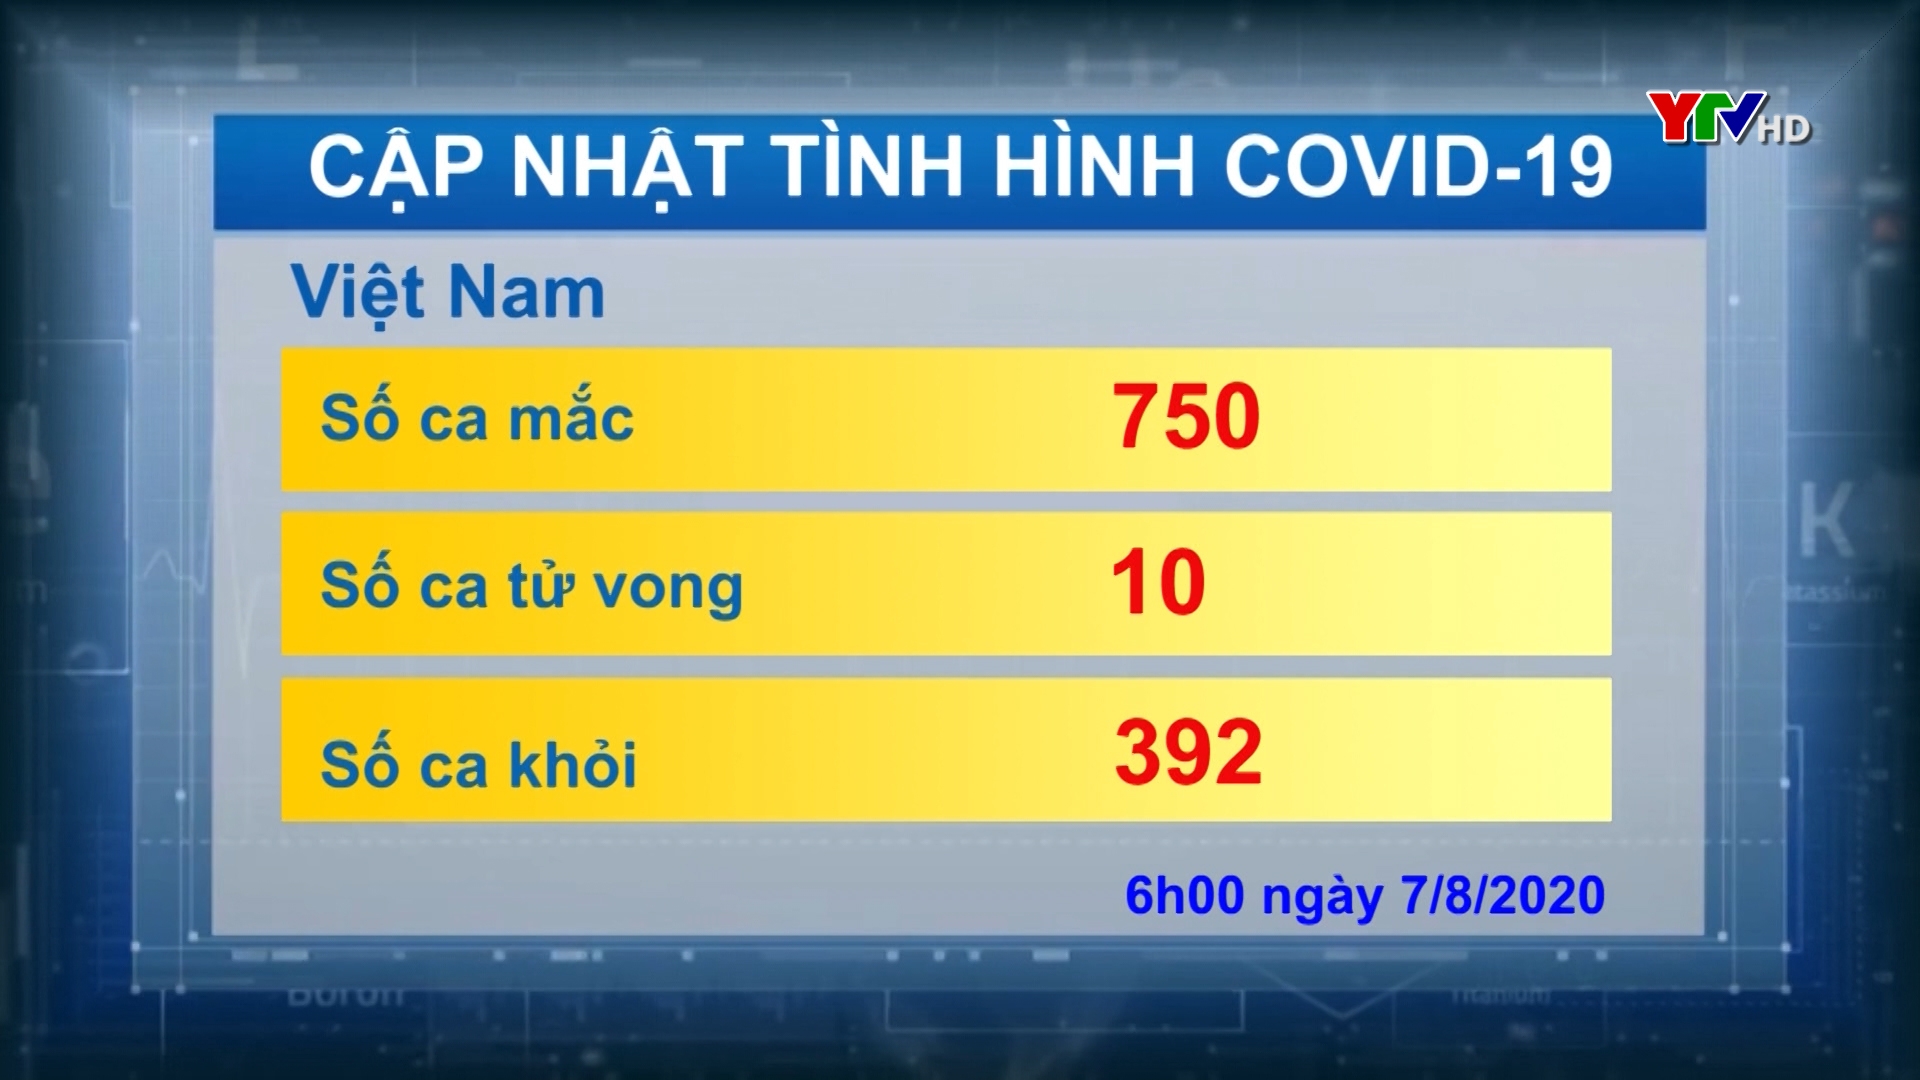 Việt Nam ghi nhận thêm 3 ca nhiễm mới COVID - 19